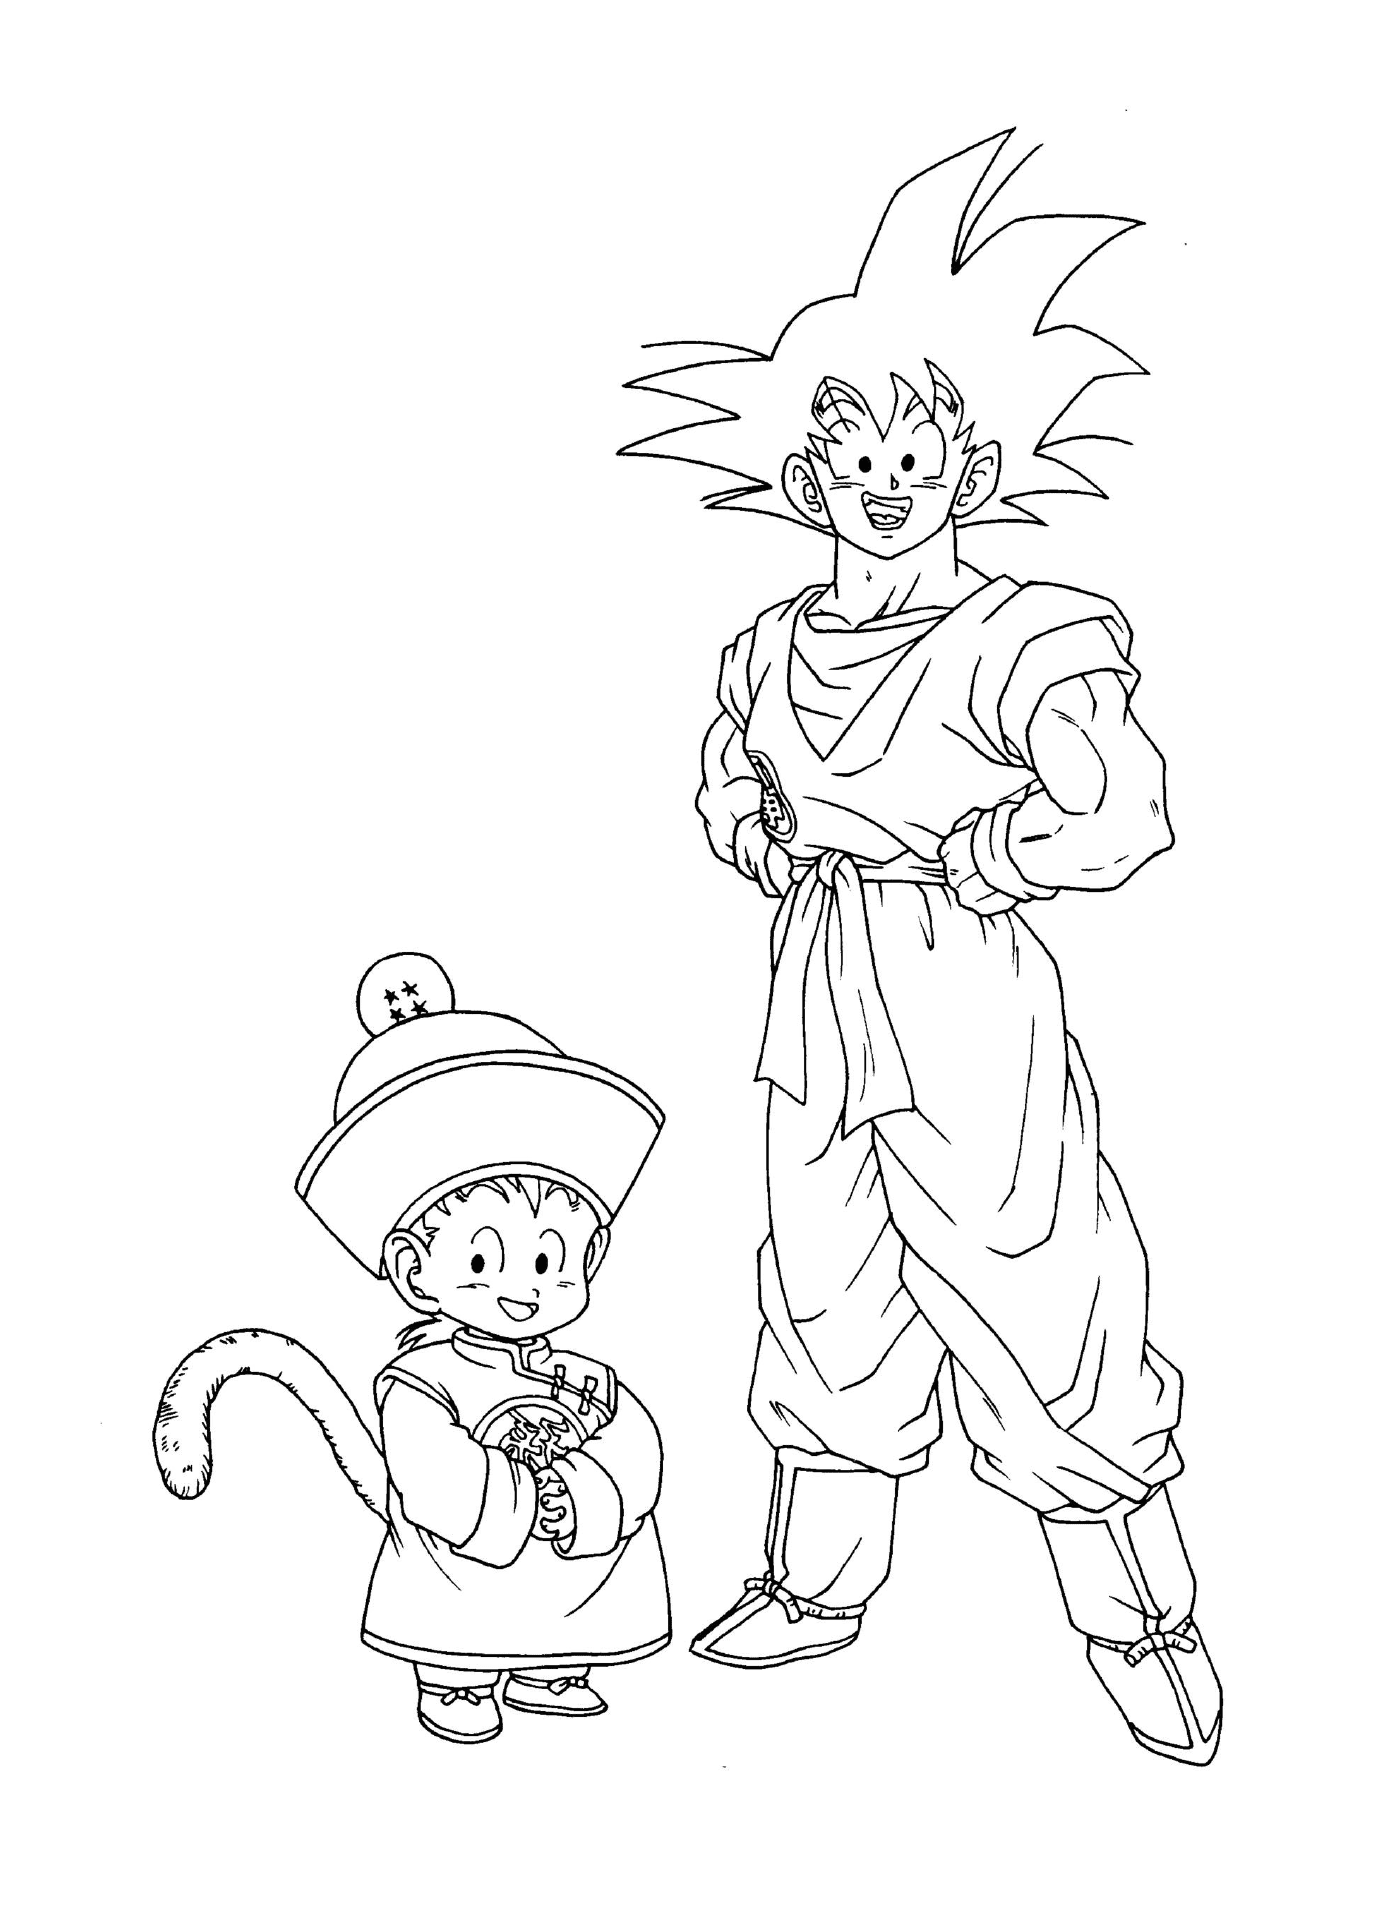  Personagens de Dragon Ball Z: Goku e Goten 